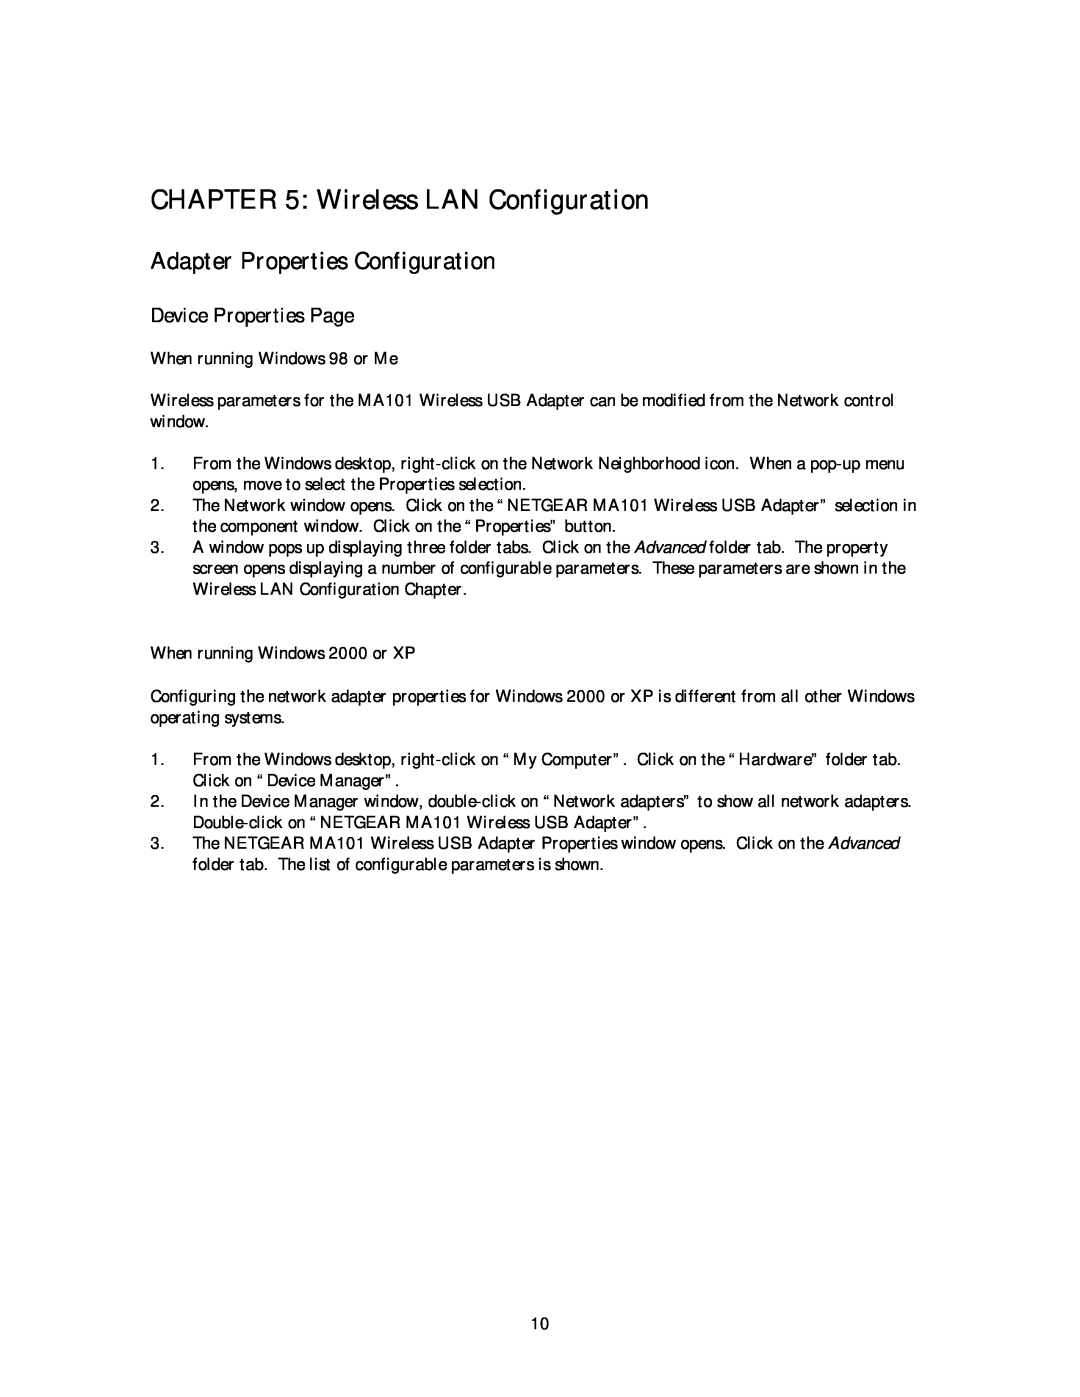 NETGEAR MA 101 manual Wireless LAN Configuration, Adapter Properties Configuration, Device Properties Page 